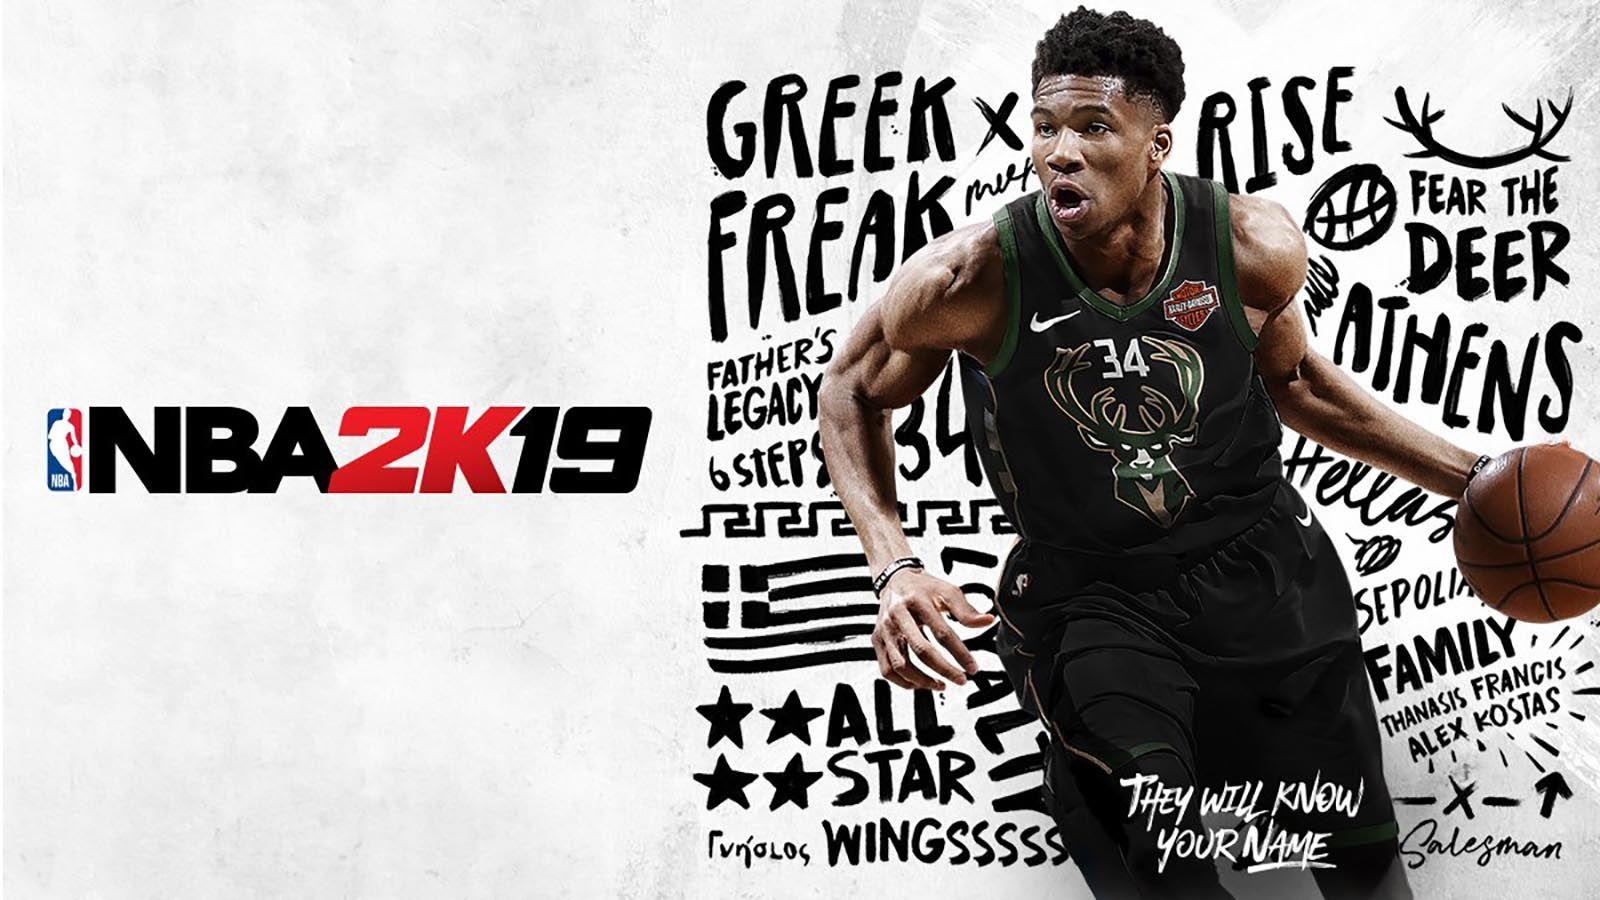 Bucks' Giannis Antetokounmpo lands NBA 2K19 video game cover